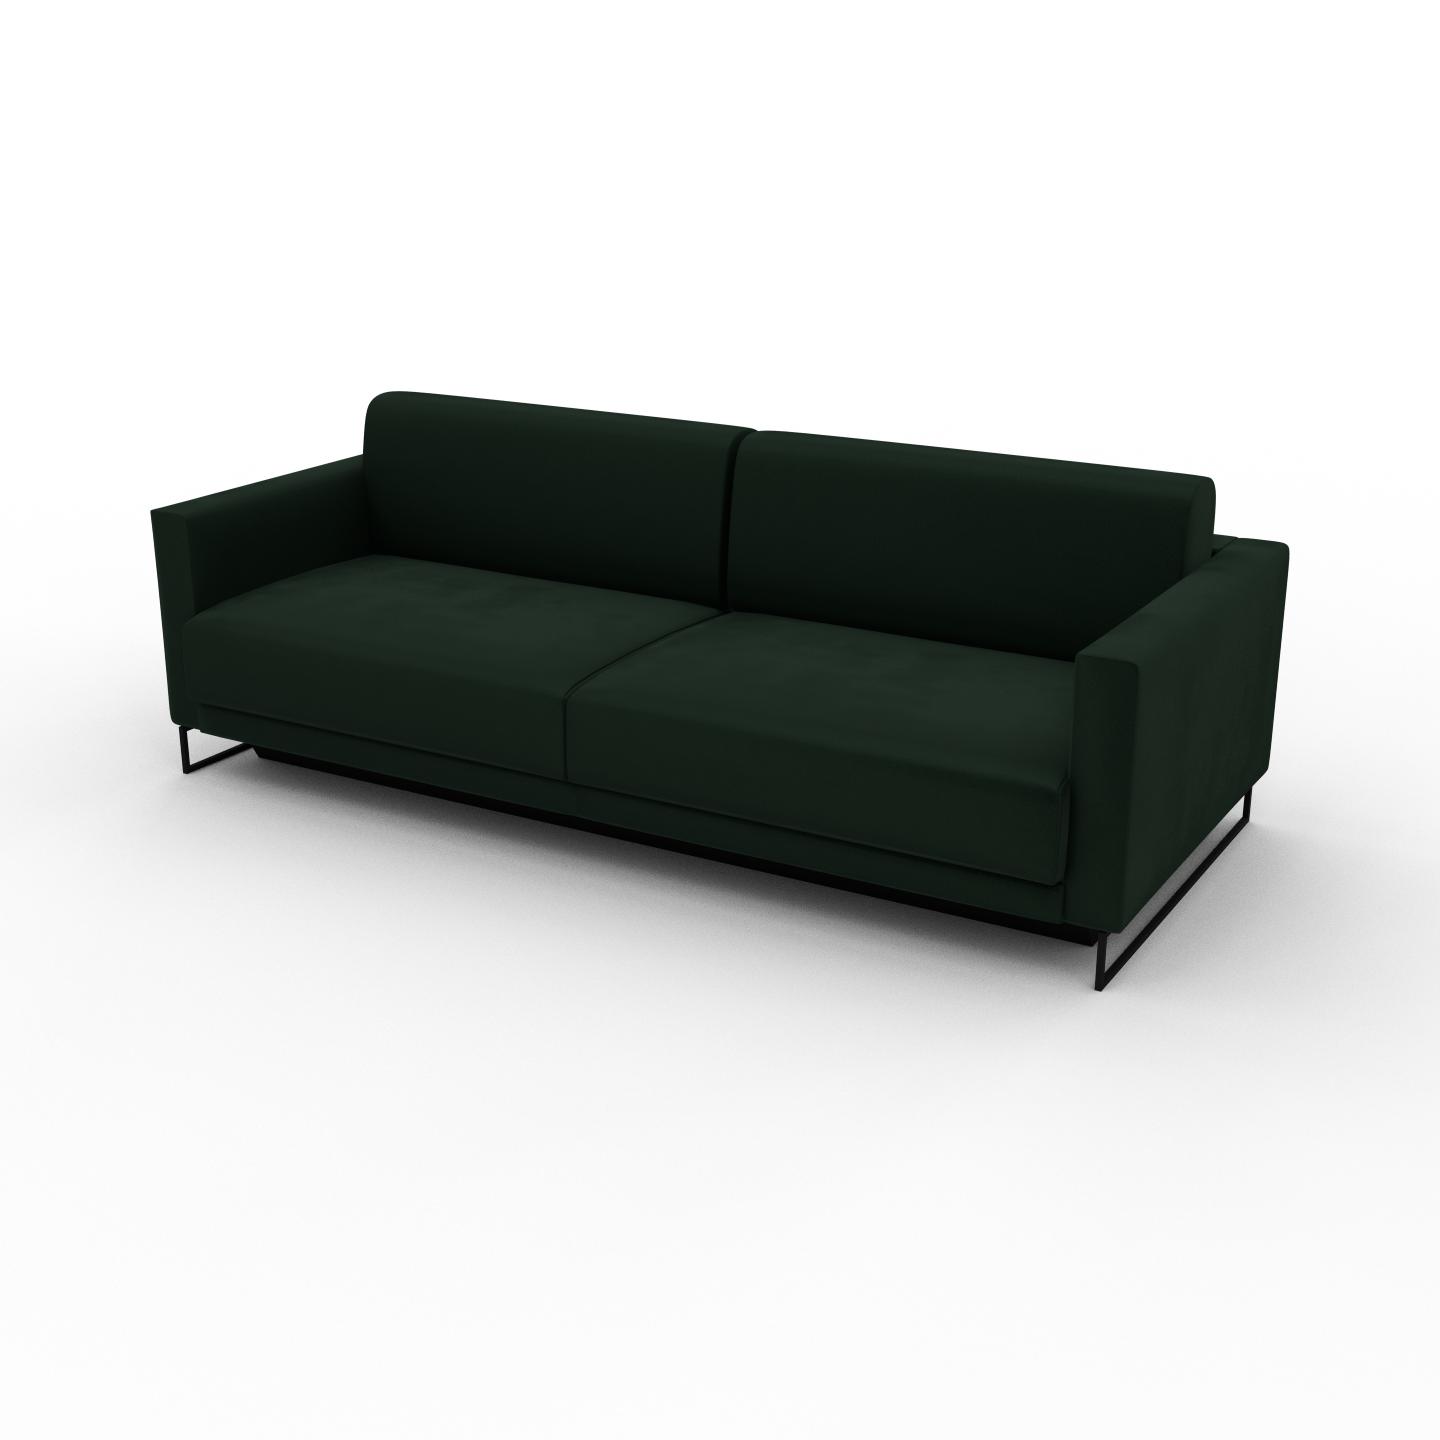 MYCS Sofa 3-Sitzer Samt Tannengrün Samt - Elegantes, gemütliches 3-Sitzer Sofa: Hochwertige Qualität, einzigartiges Design - 224 x 75 x 98 cm,...